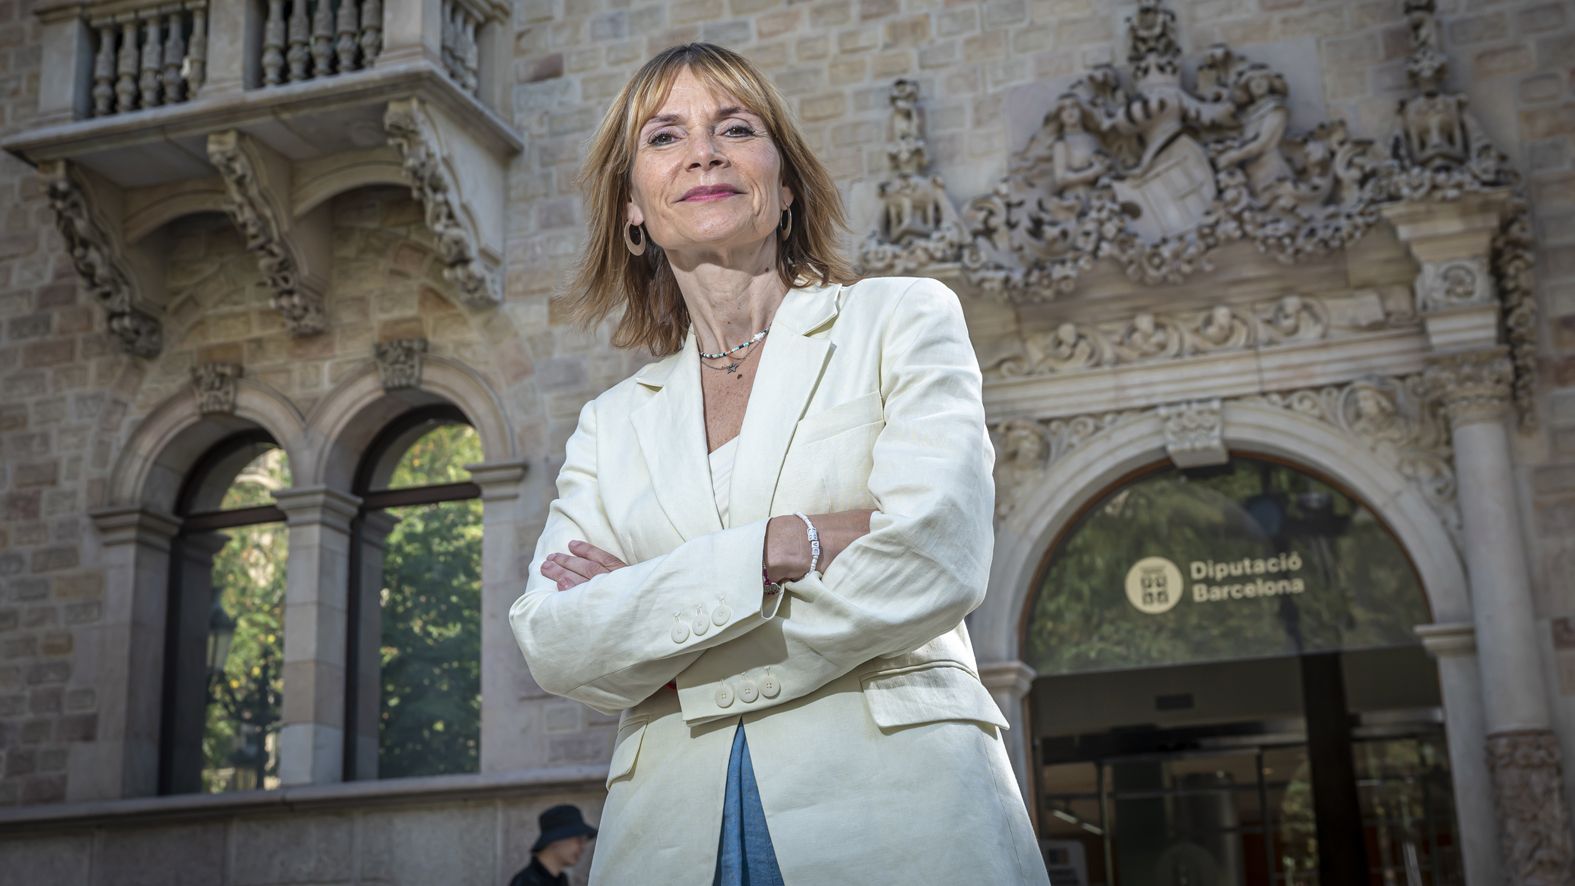 Entrevista a la presidenta de la Diputación de Barcelona, Lluïsa Moret.